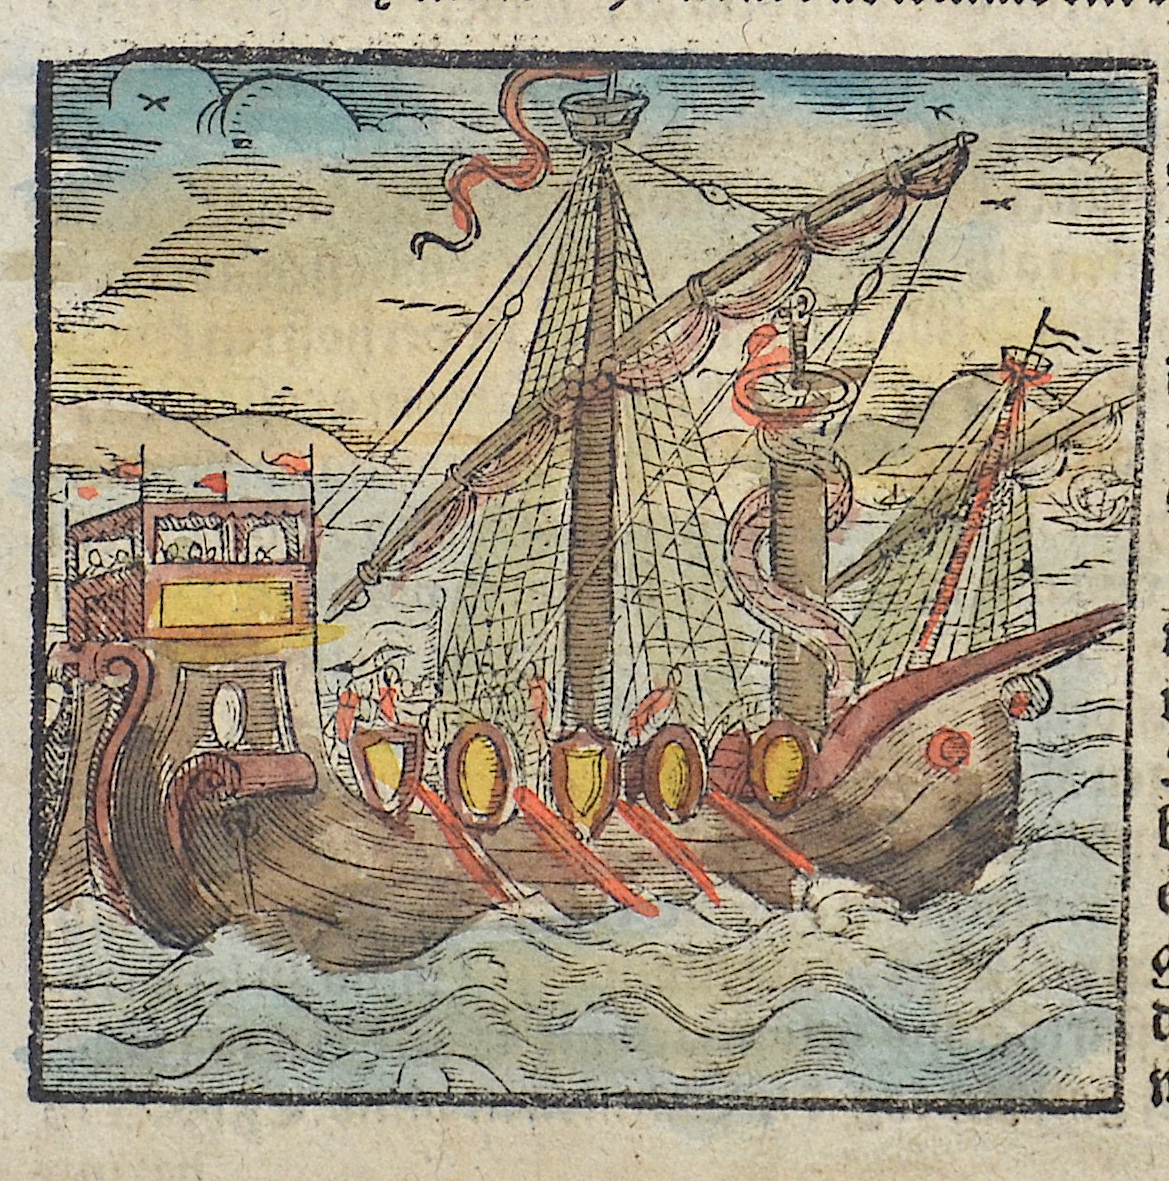 Münster Sebastian Das Siebendte Buch 1468 – Von den Ländern Asie. 1467